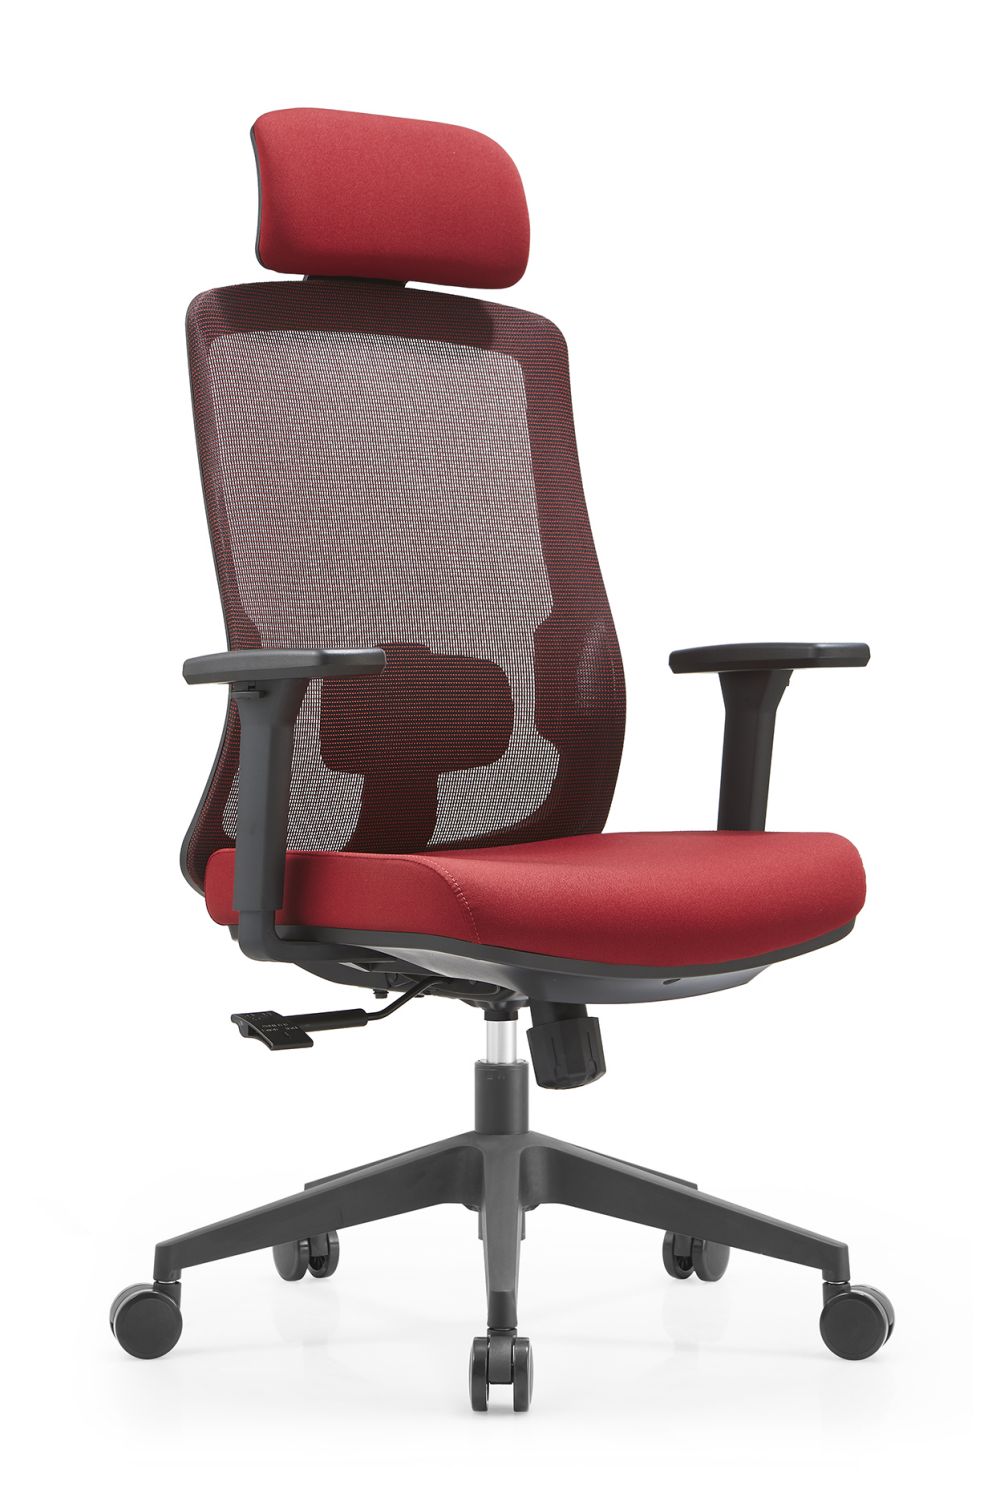 သက်တောင့်သက်သာရှိသော Ergonomic Office Chair (၂) လုံး၊